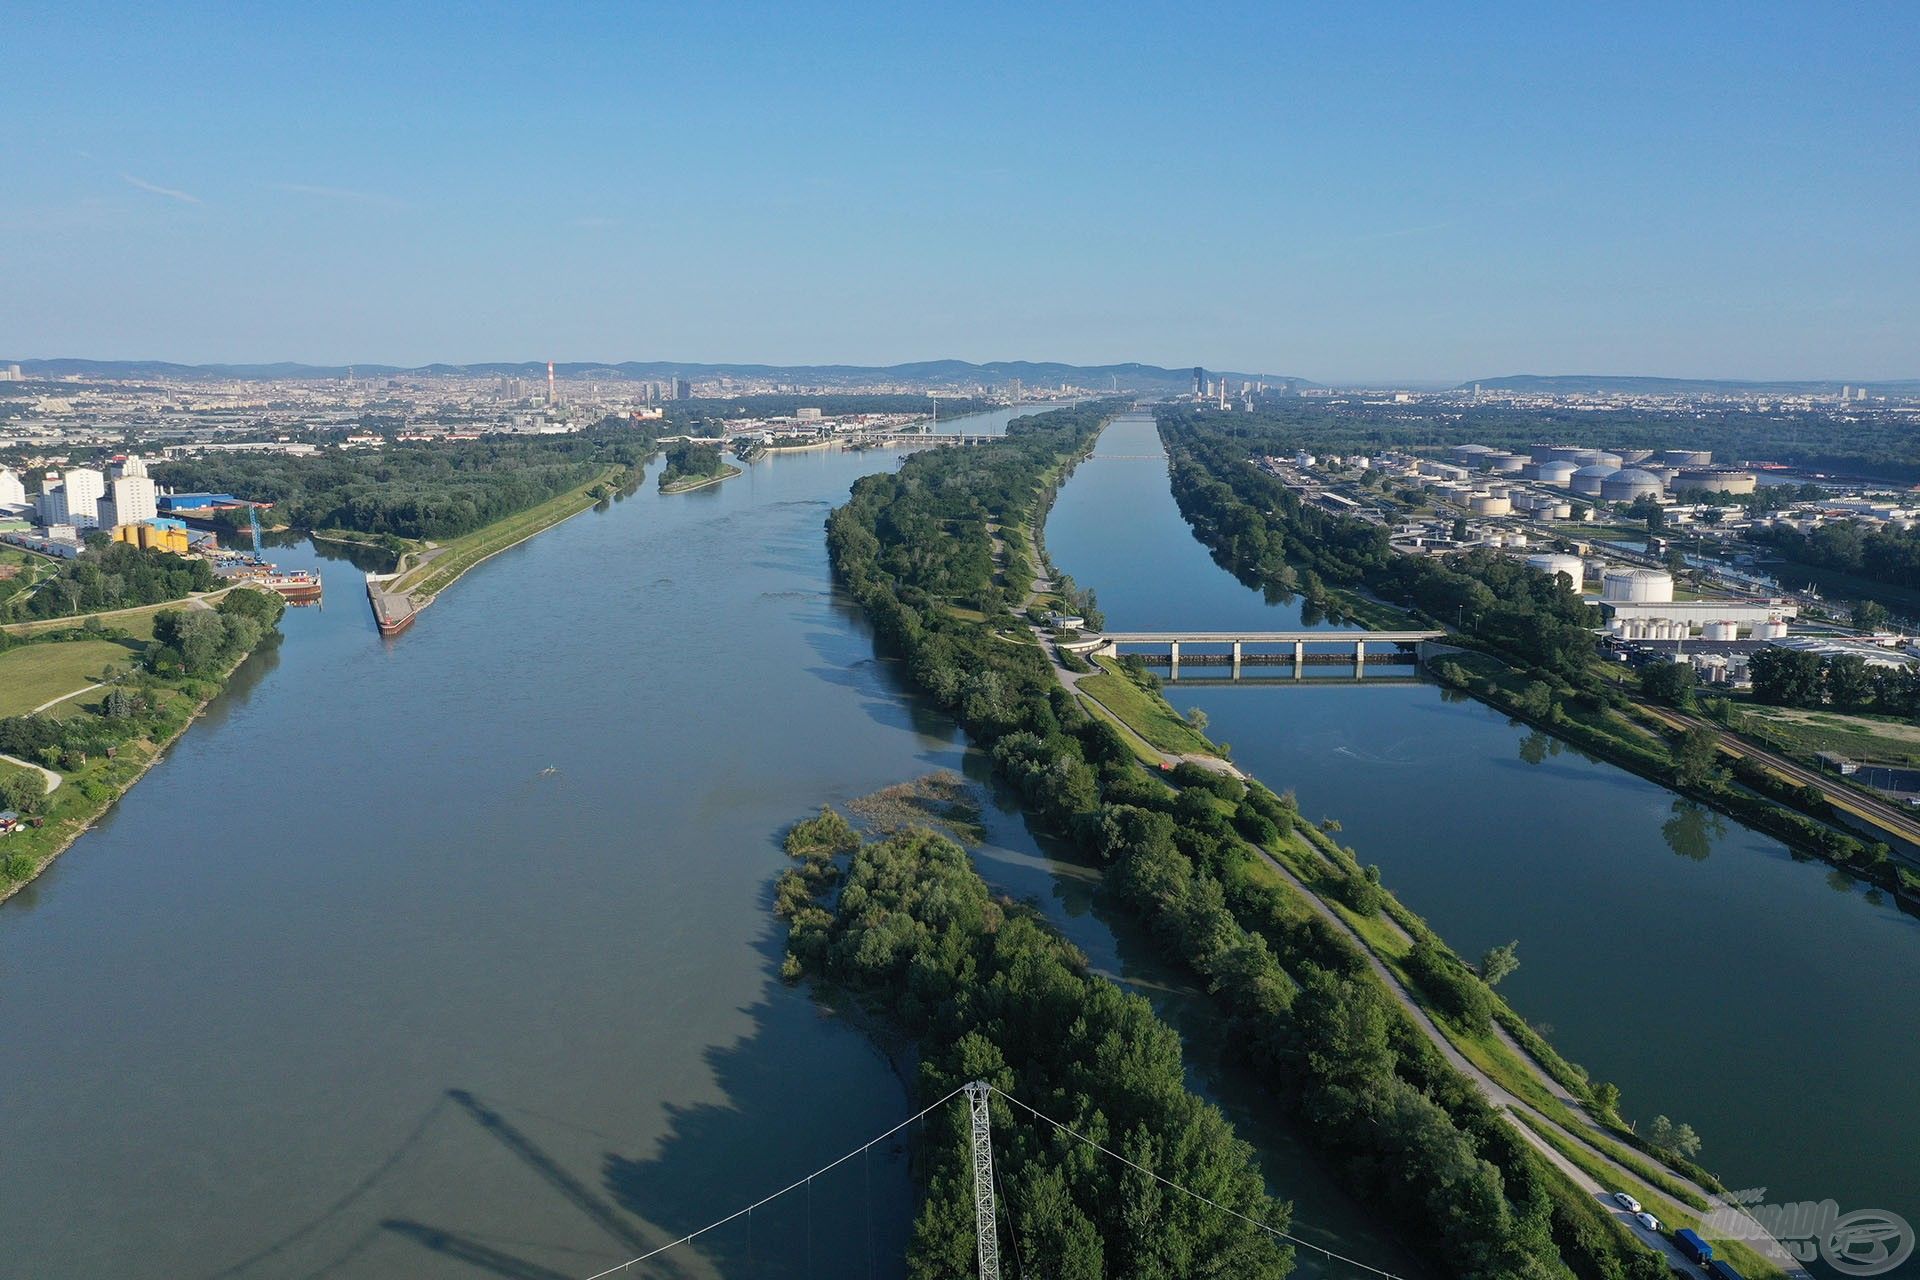 Bal oldalon a főmeder, jobb oldalon az Új-Duna, amely a folyóval párhuzamosan halad mintegy 21 km hosszam Bécs városán keresztül, az alsó-ausztriai Langenzersdorf községben a főfolyó csomópontjától, a 21. kerületen keresztül egészen a főfolyóval való összefolyásig. Árvízvédelmi célból épült az Új-Duna, amely elvezeti és tehermentesíti a főmedret, megvédve a fővárost. Vize lassan áramlik, egyes helyeken áll, mivel zsilipekkel szabályozott szakaszokról van szó